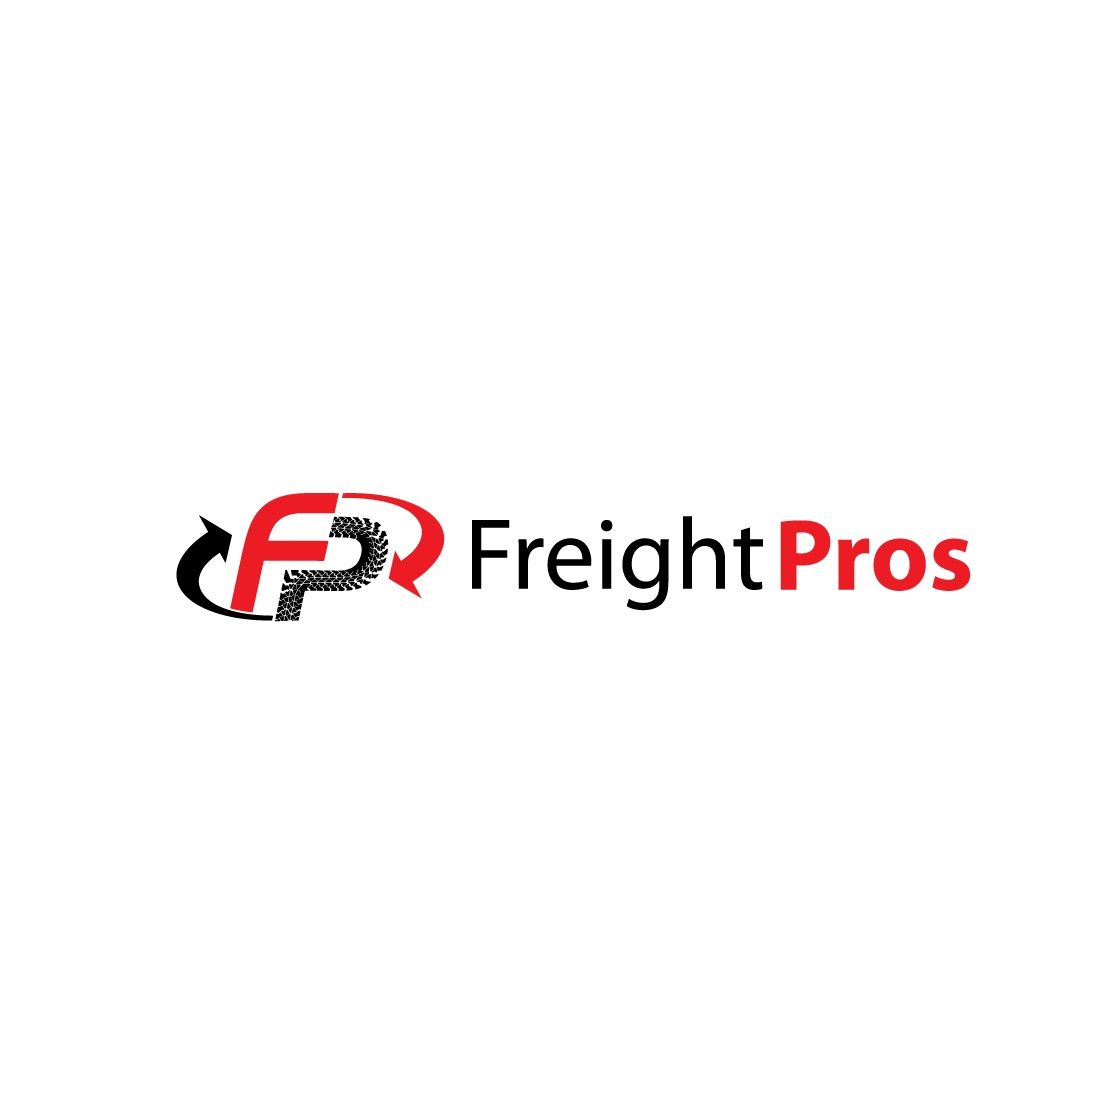 freightpros management